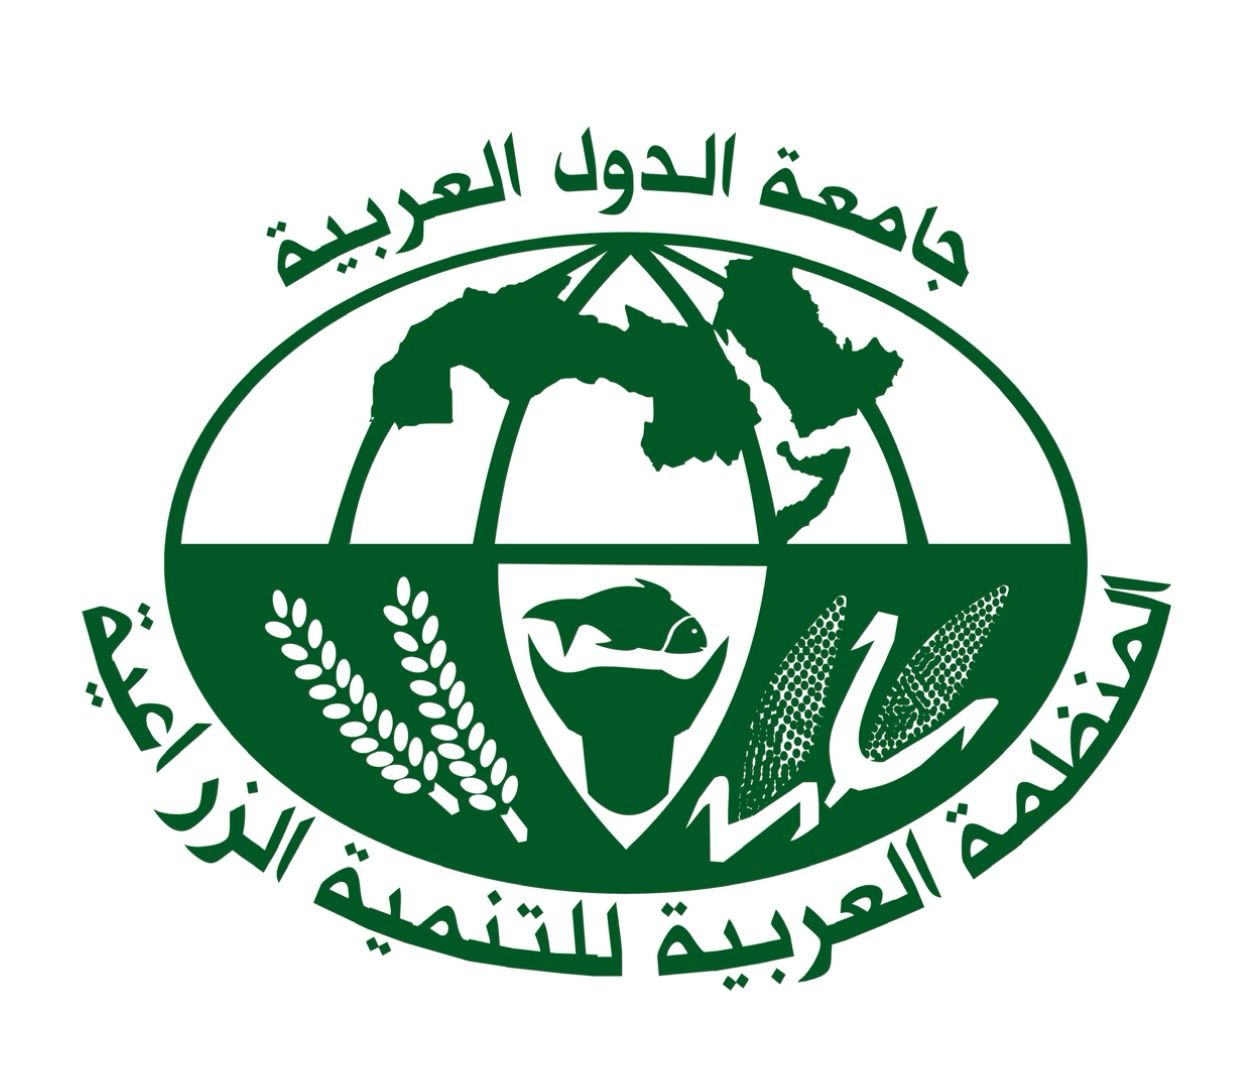 المنظمة العربية للتنمية الزراعية تطلق مشروعا لتطوير ريادة الأعمال بالزراعة والبيئة في جزر القمر